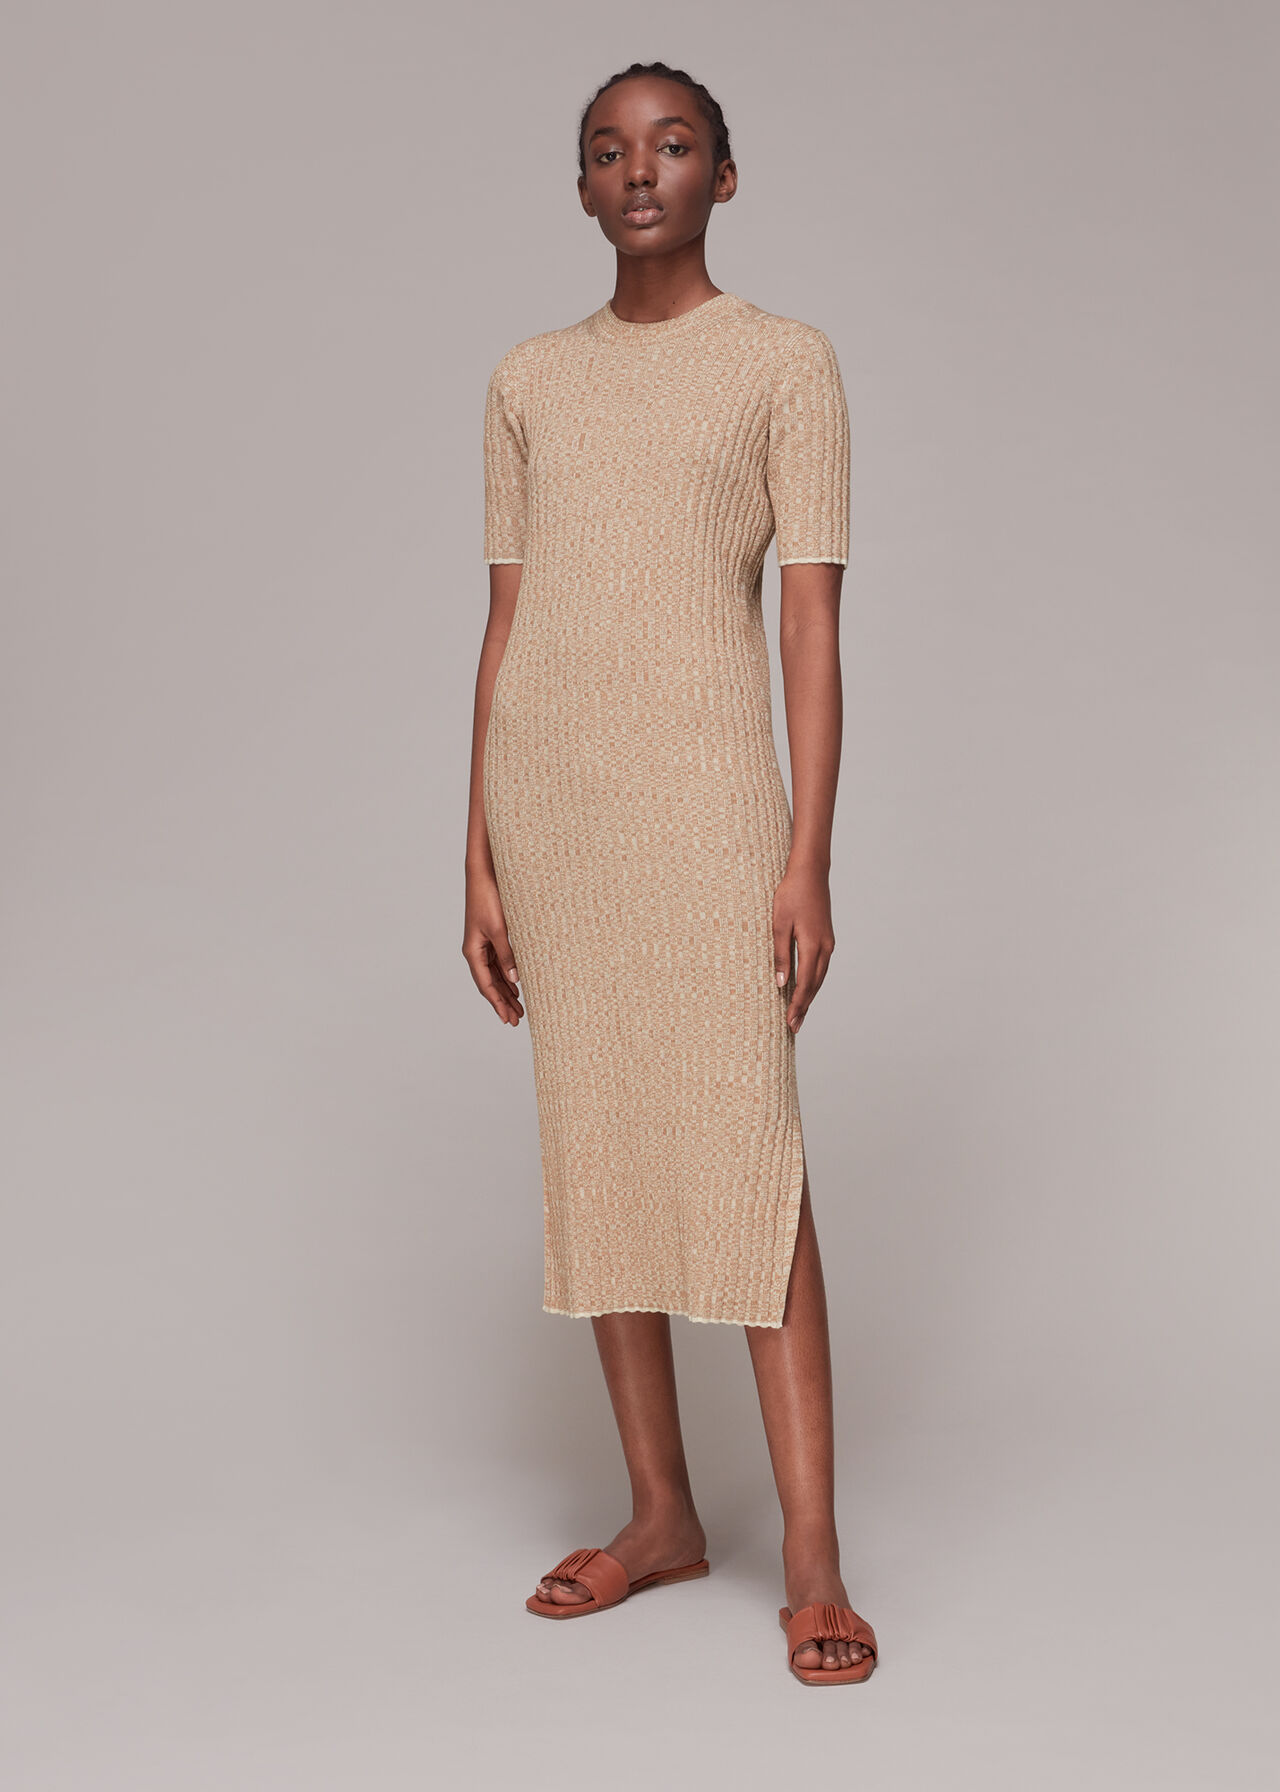 Mona | Knit Dress